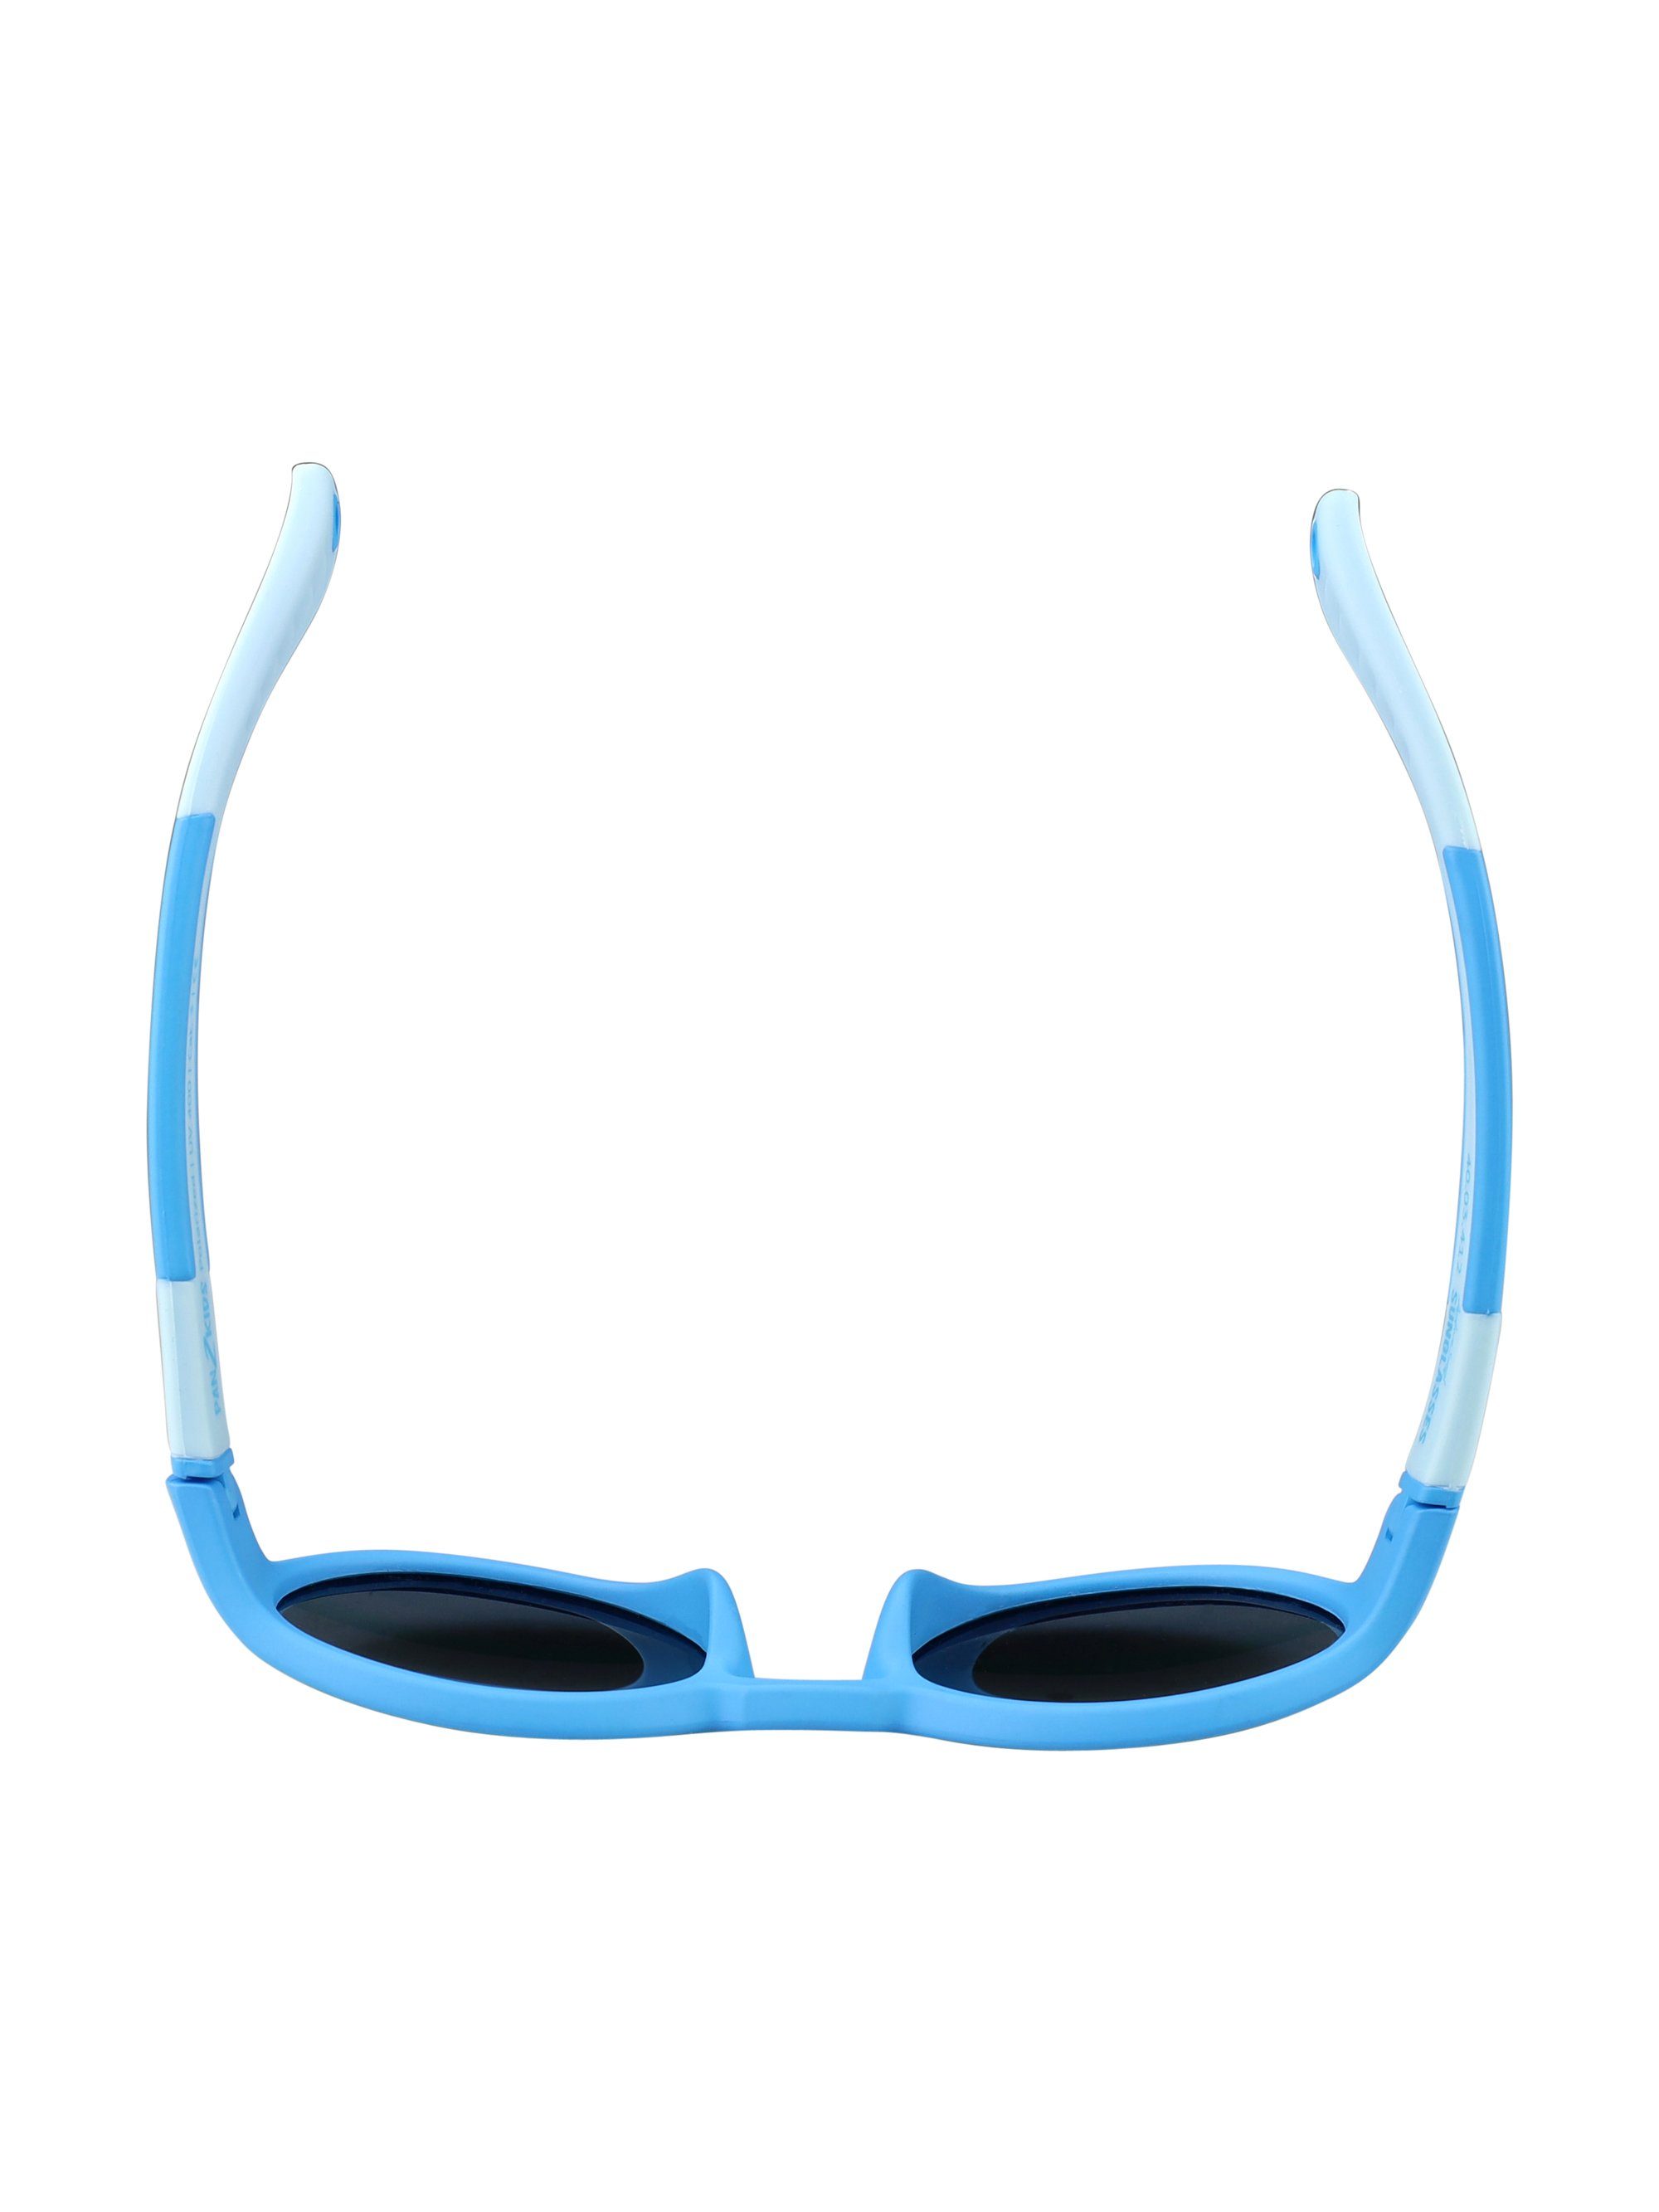 – 5 ActiveSol Tranquil Design, Pan2Kids, polarisiert Sonnenbrille Kinder Blue - Jahre, für 2 SUNGLASSES Panto